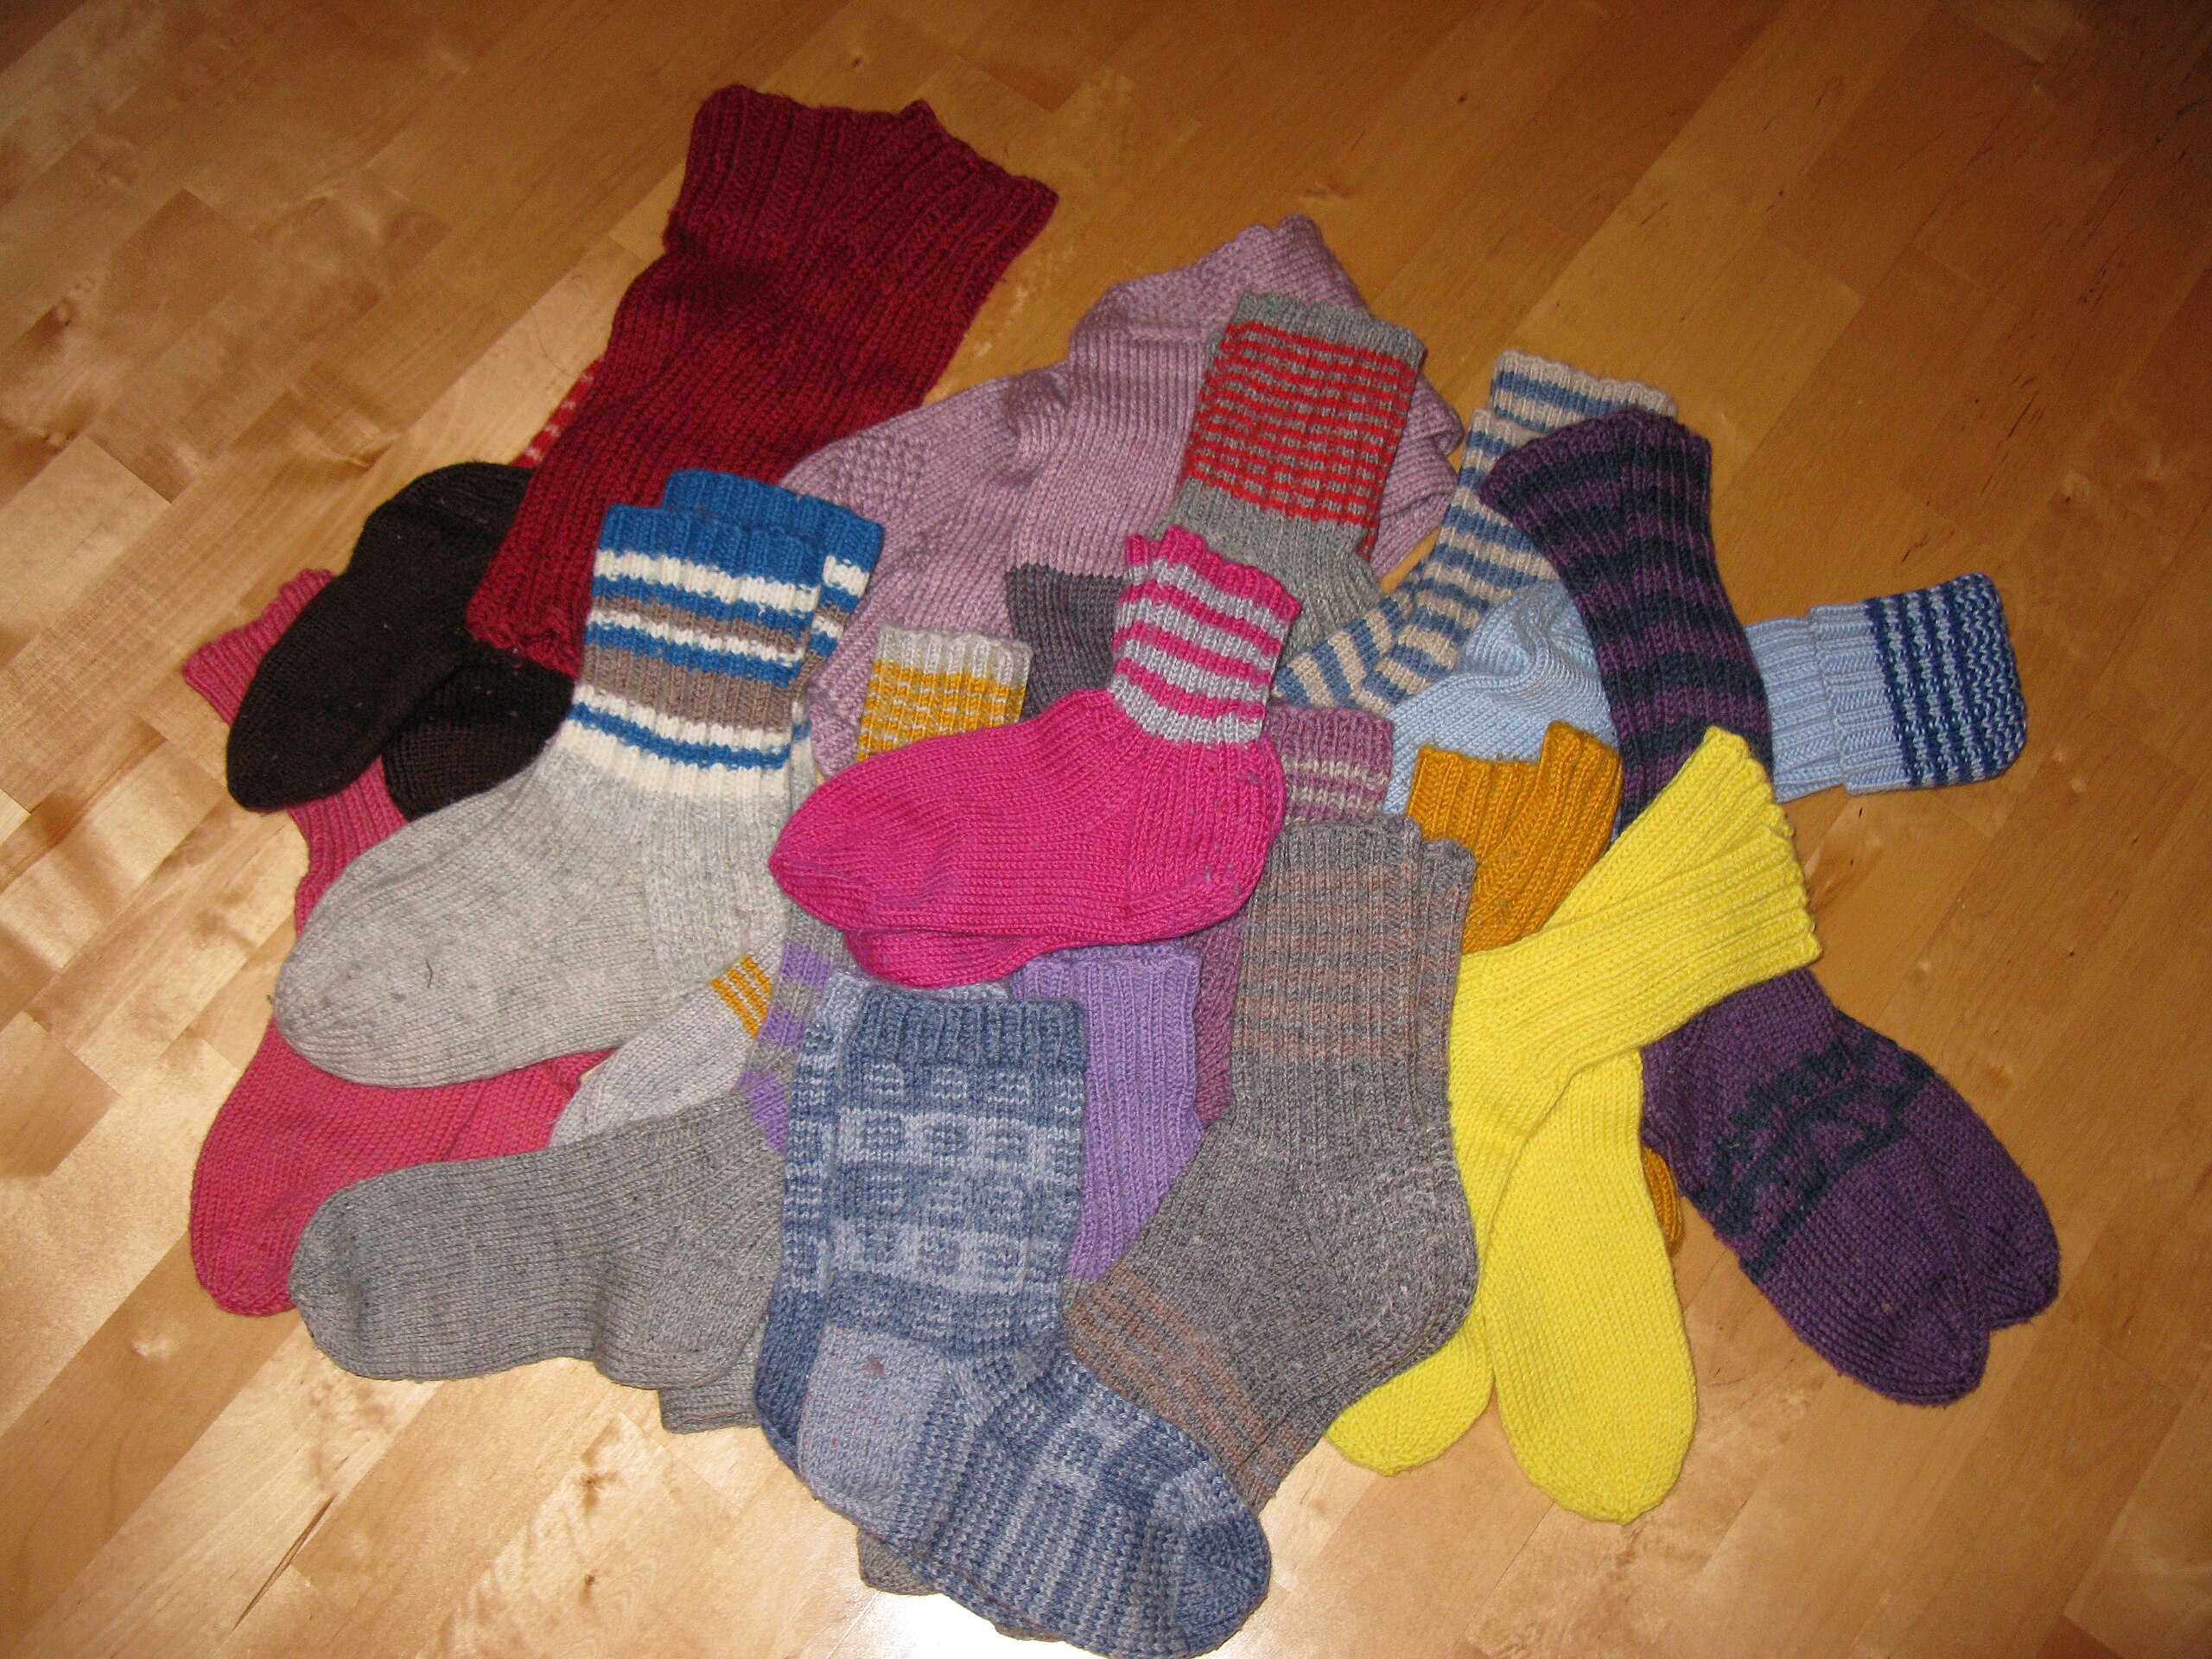 File:Woolen socks on the floor.JPG - Wikimedia Commons